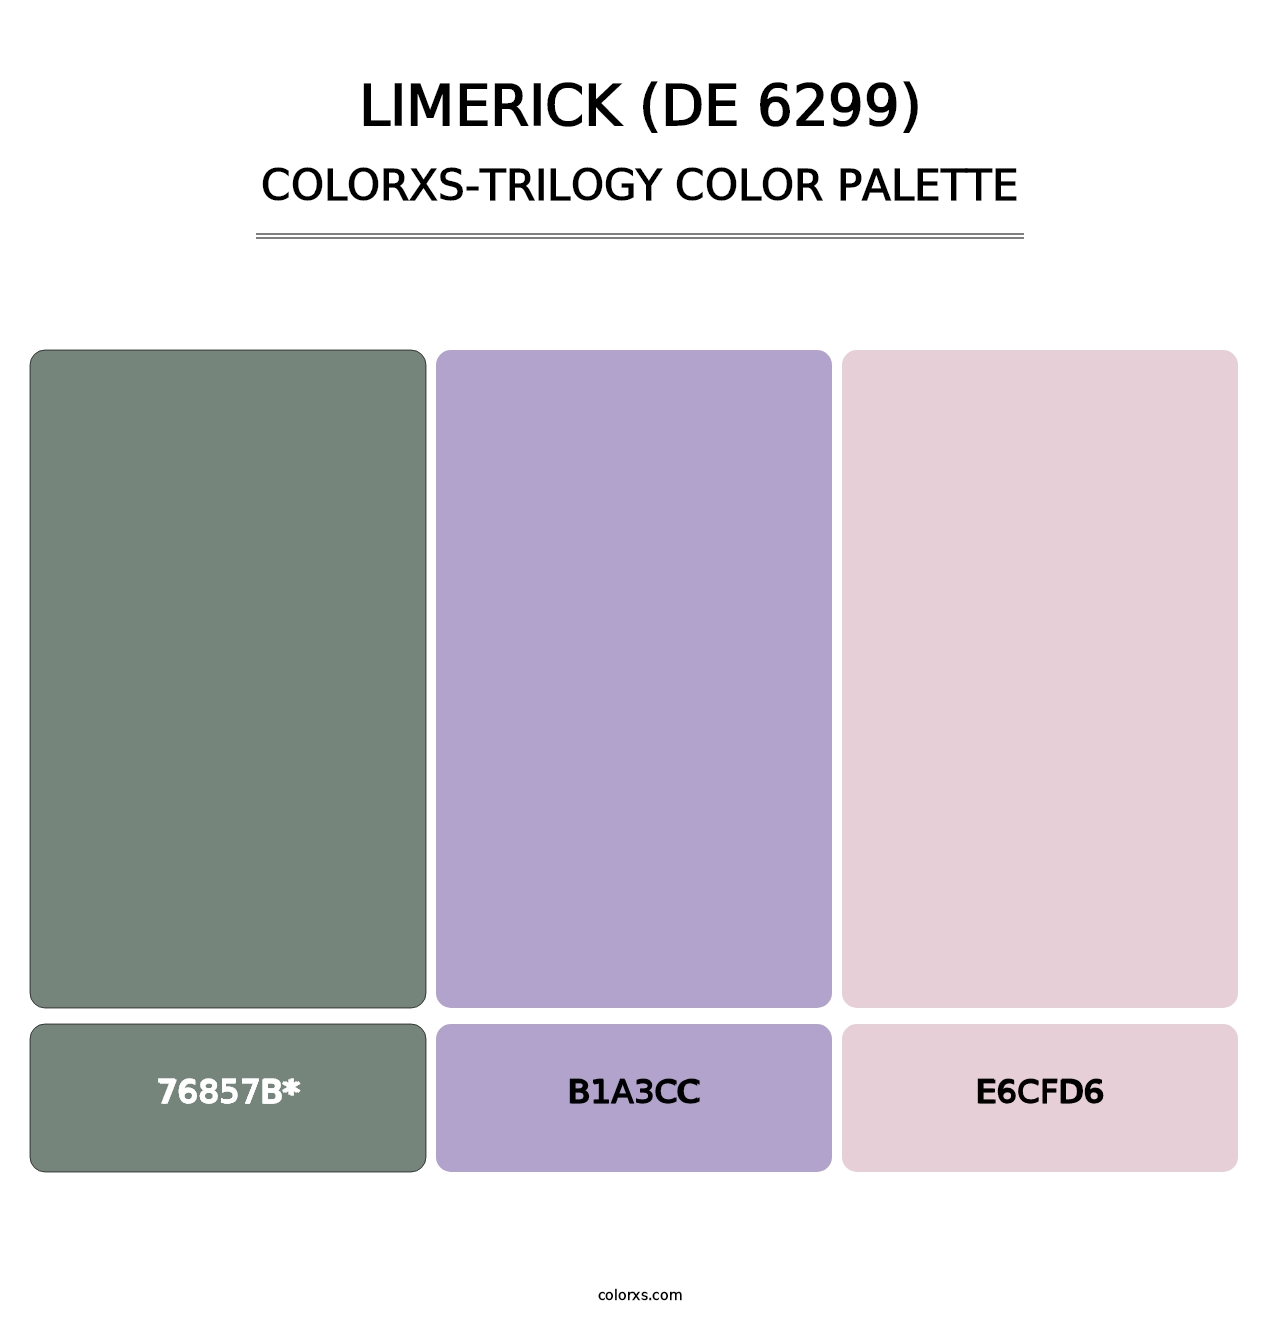 Limerick (DE 6299) - Colorxs Trilogy Palette